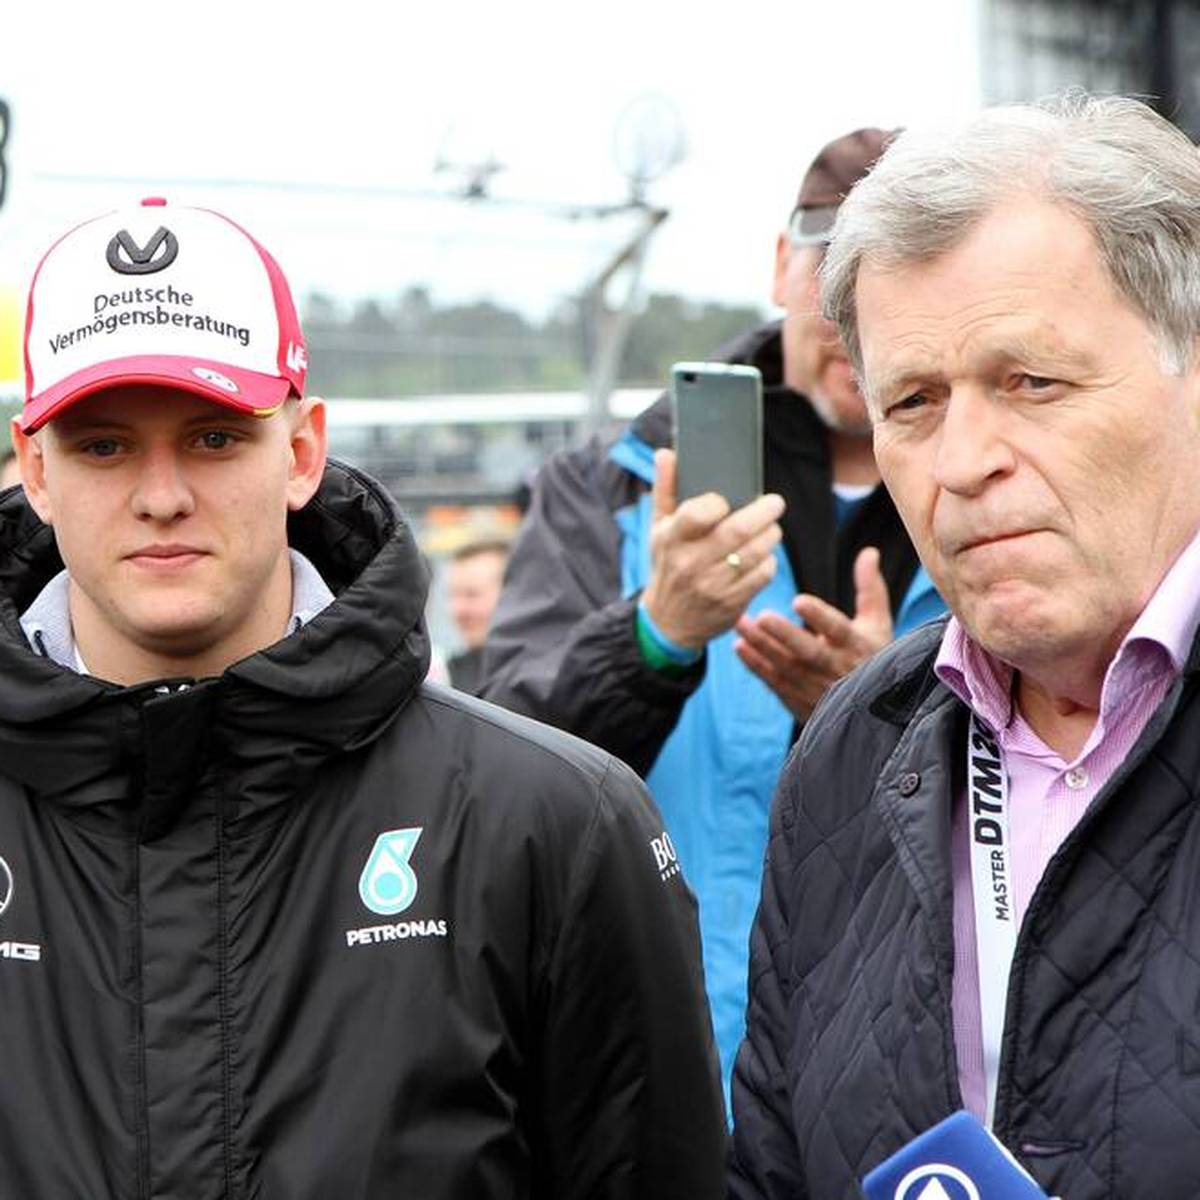 Mick Schumachers Zukunft in der Formel 1 ist noch immer ungewiss. Der ehemalige Mercedes-Motorsport-Chef Norbert Haug glaubt, dass ein Verbleib in der Königsklasse eng werden könnte.